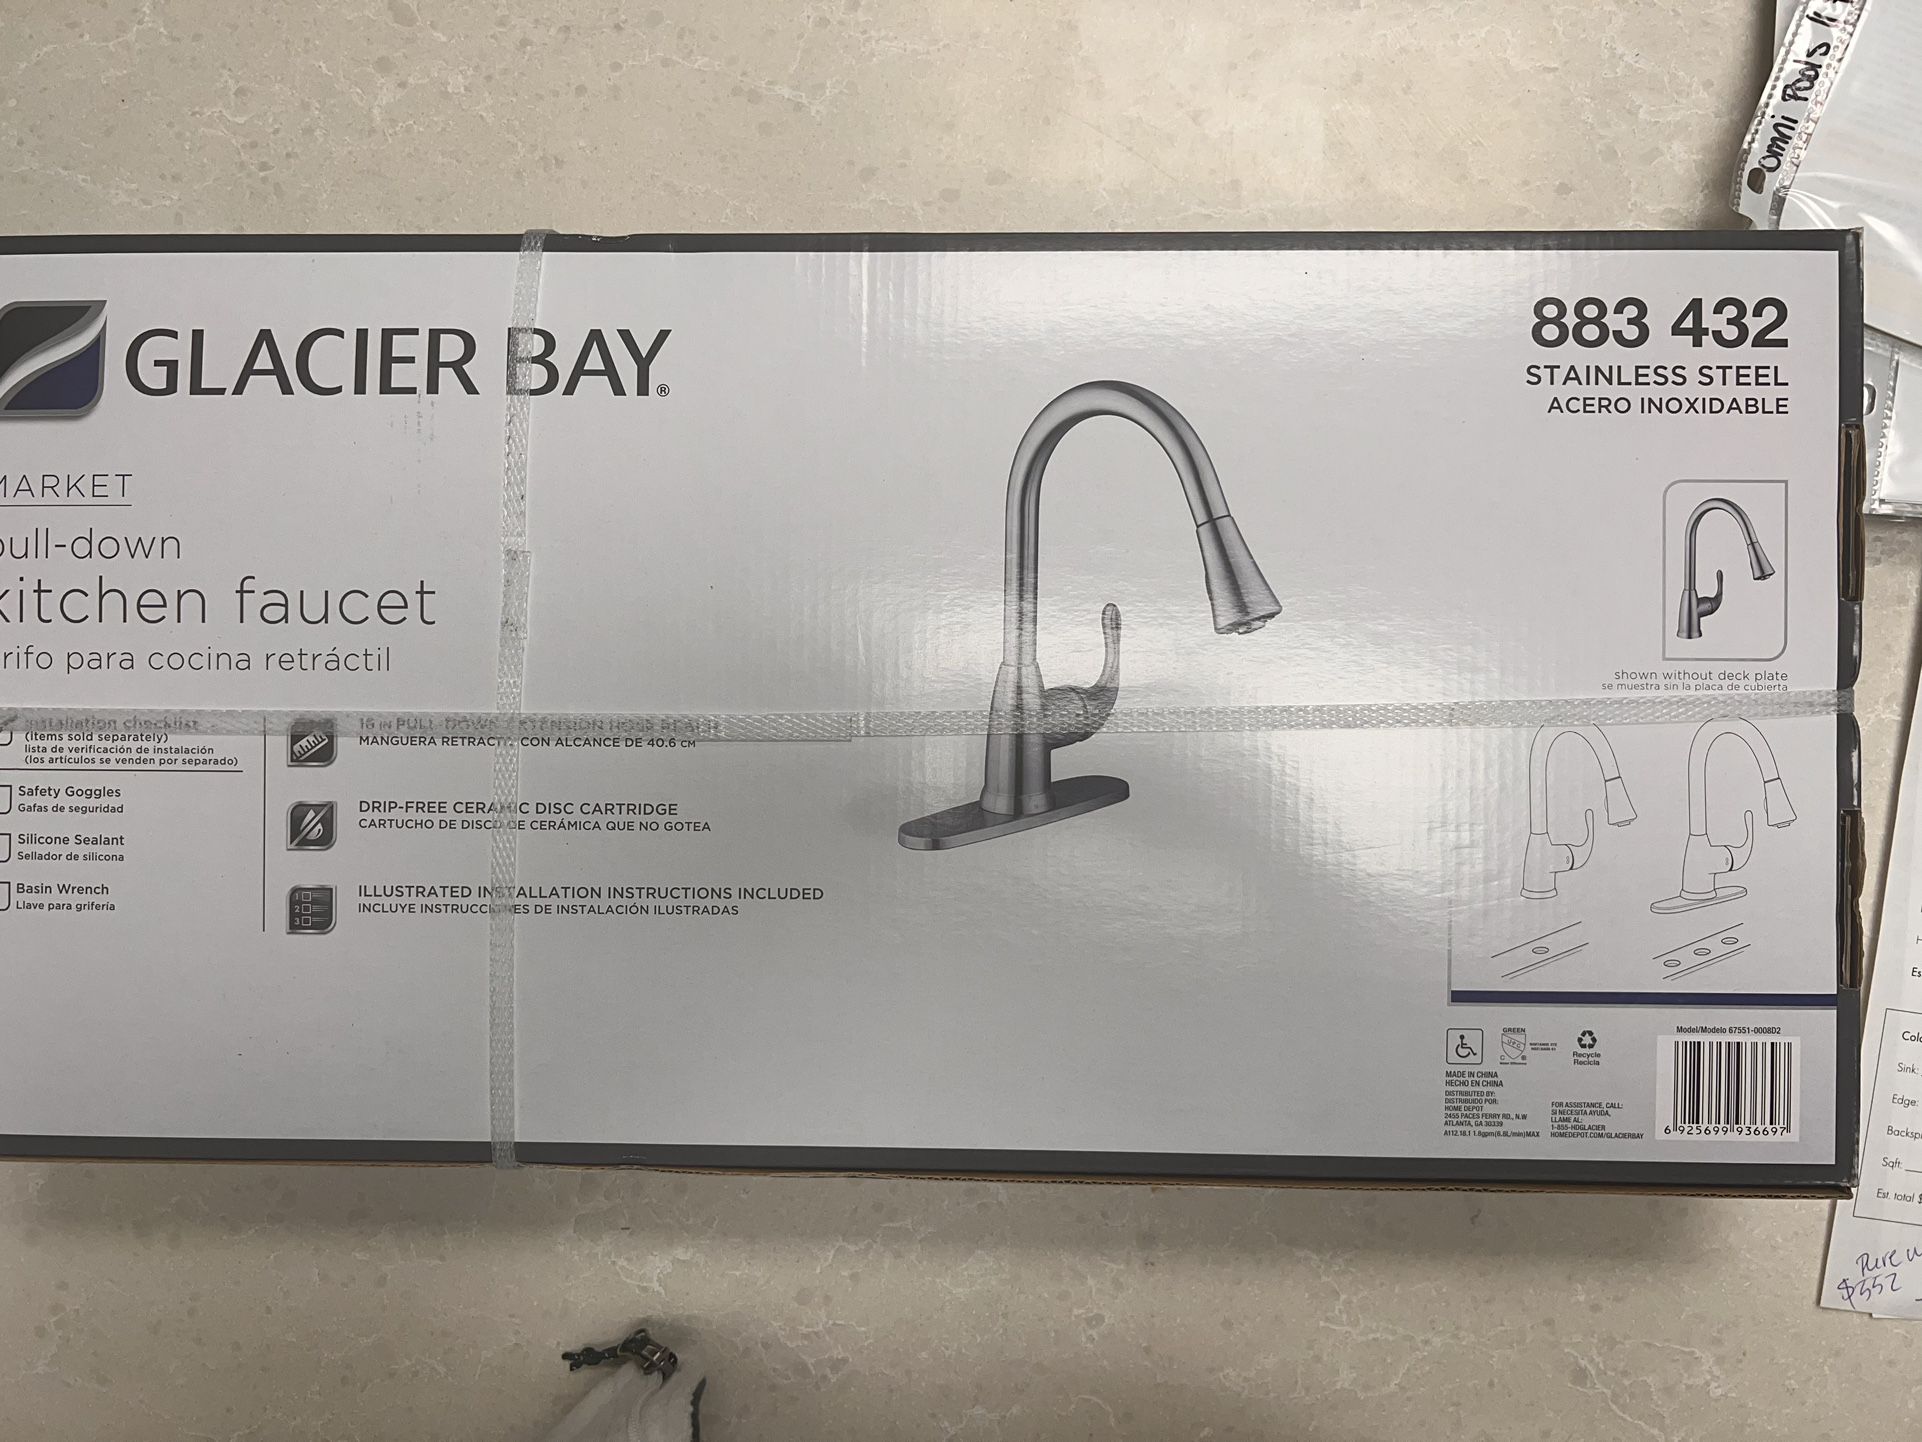 Glacier Bay Kitchen Faucet